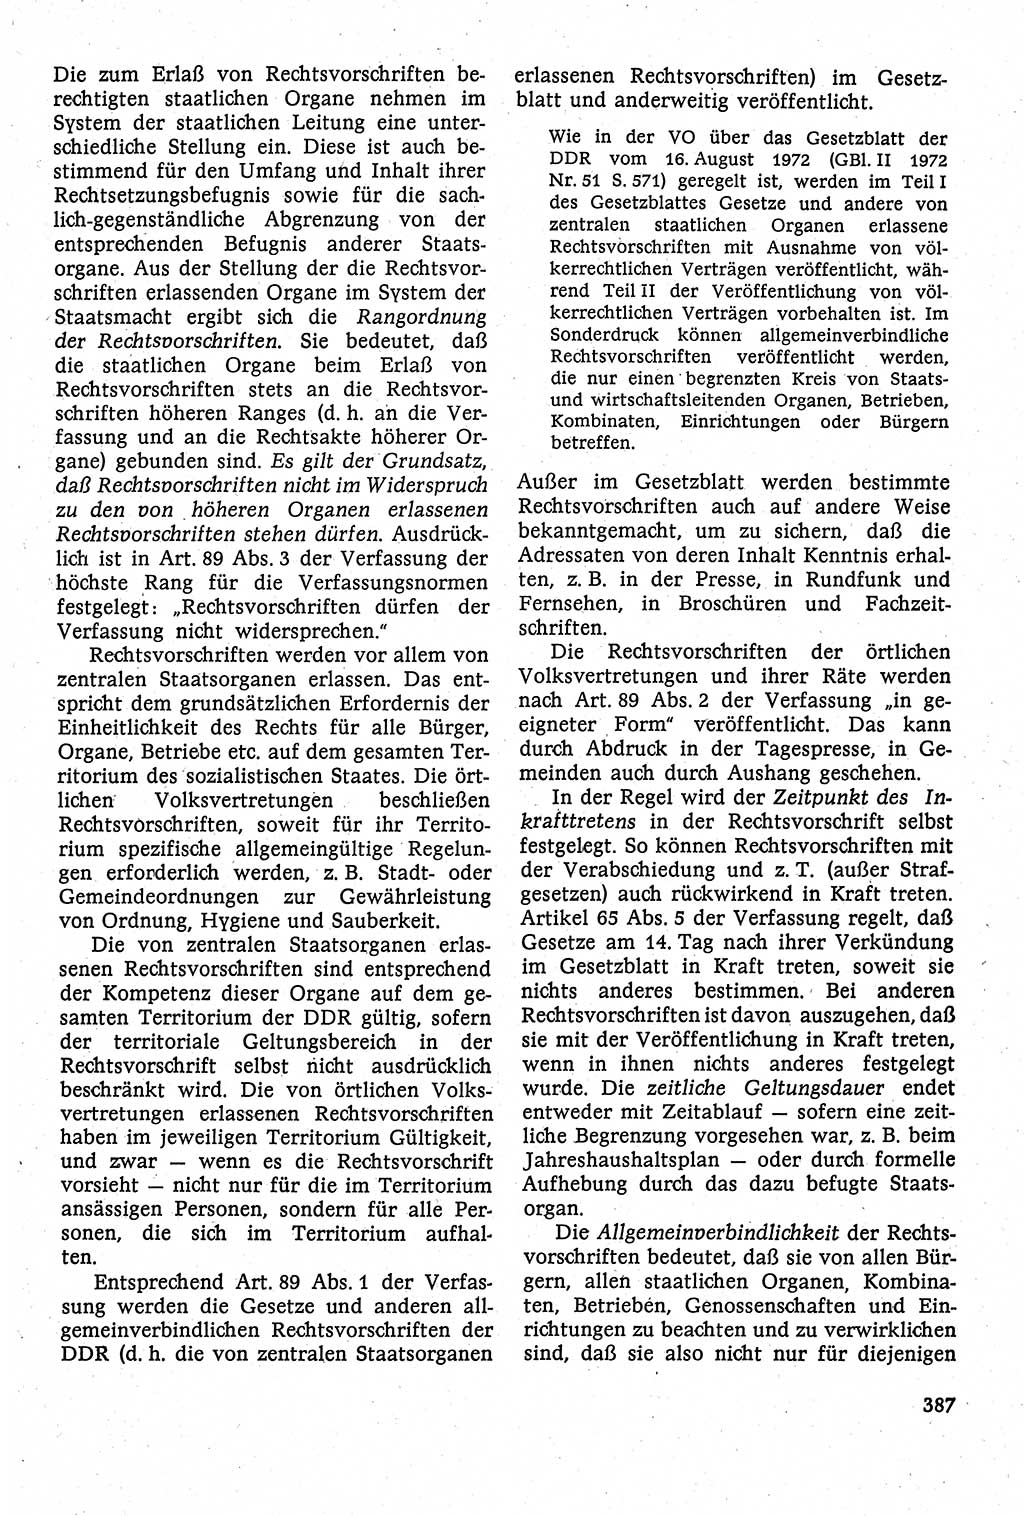 Staatsrecht der DDR [Deutsche Demokratische Republik (DDR)], Lehrbuch 1984, Seite 387 (St.-R. DDR Lb. 1984, S. 387)